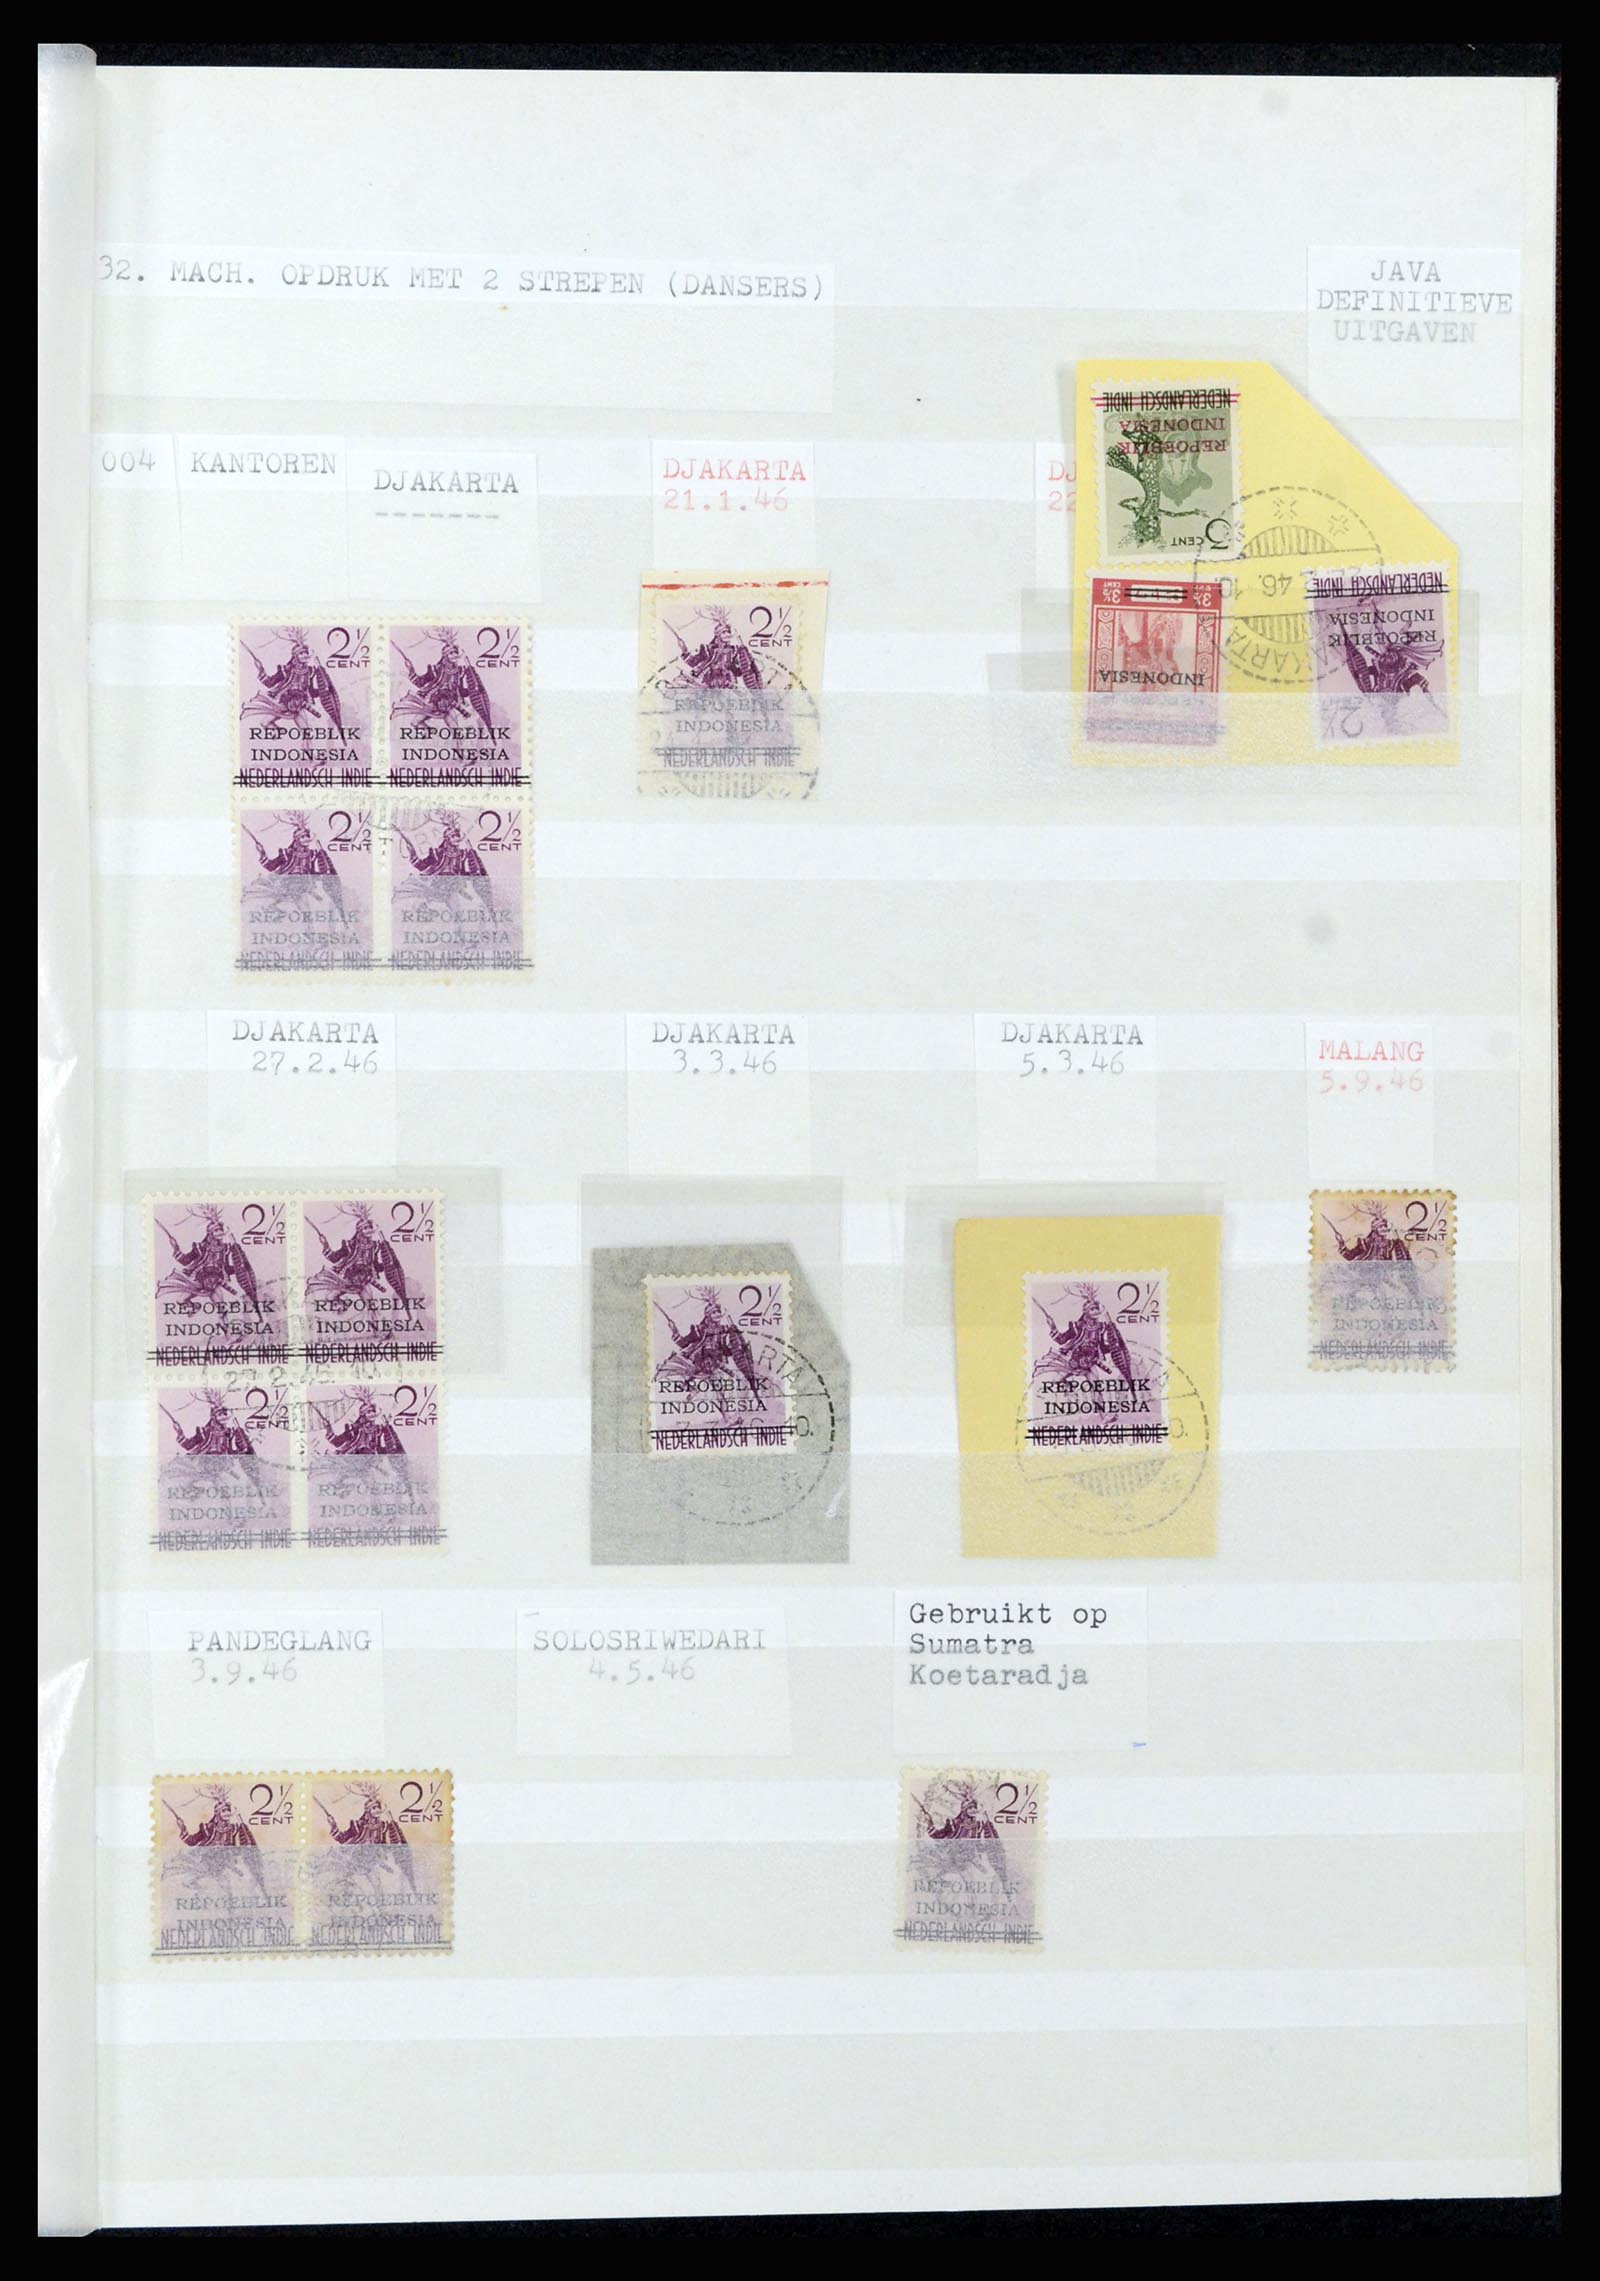 36742 306 - Stamp collection 36742 Dutch Indies interim period 1945-1949.